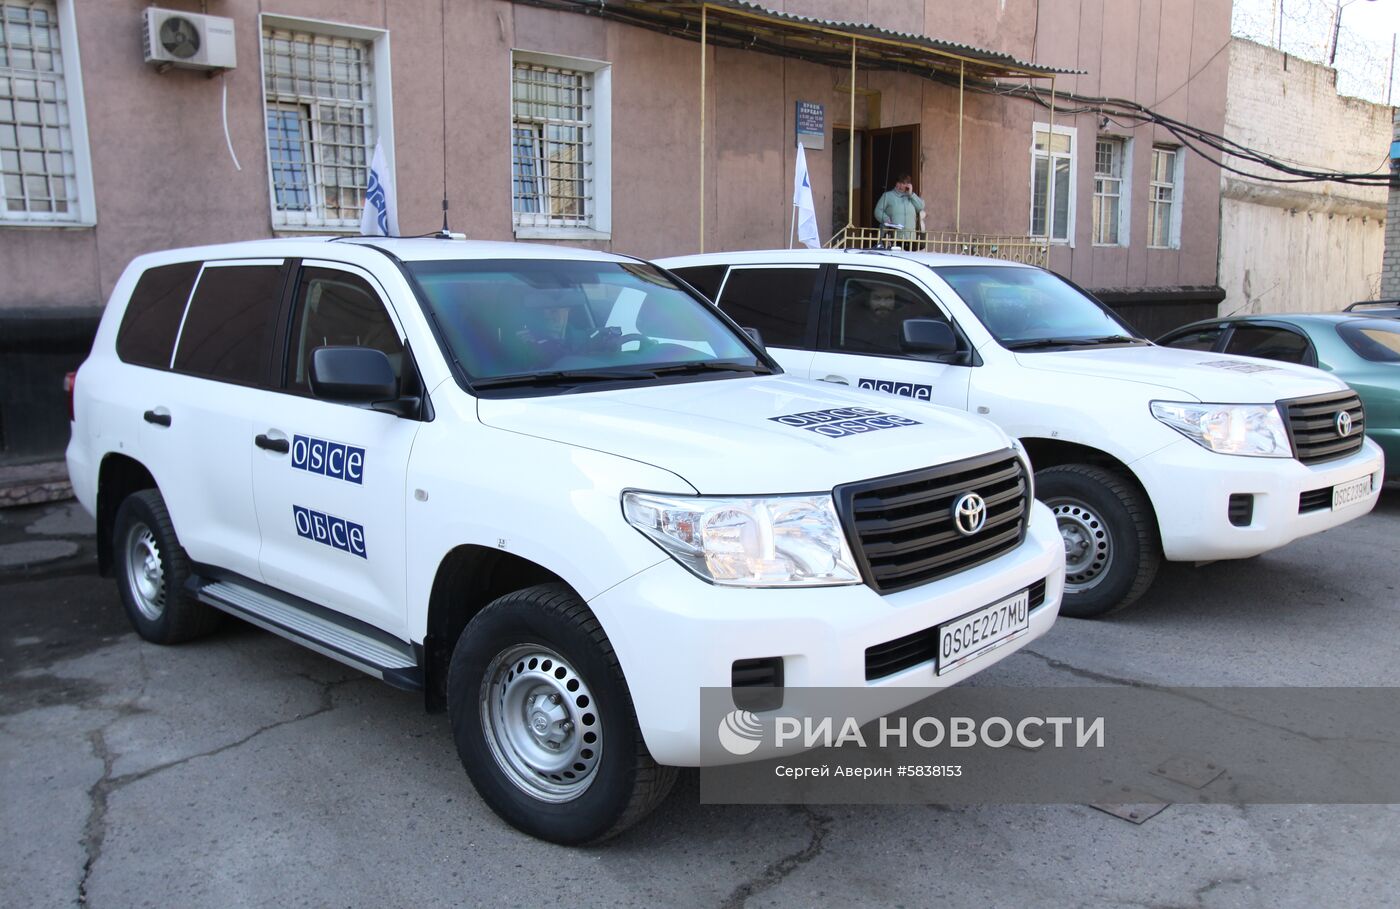 Представитель ОБСЕ Т. Фриш прибыл в Донецк